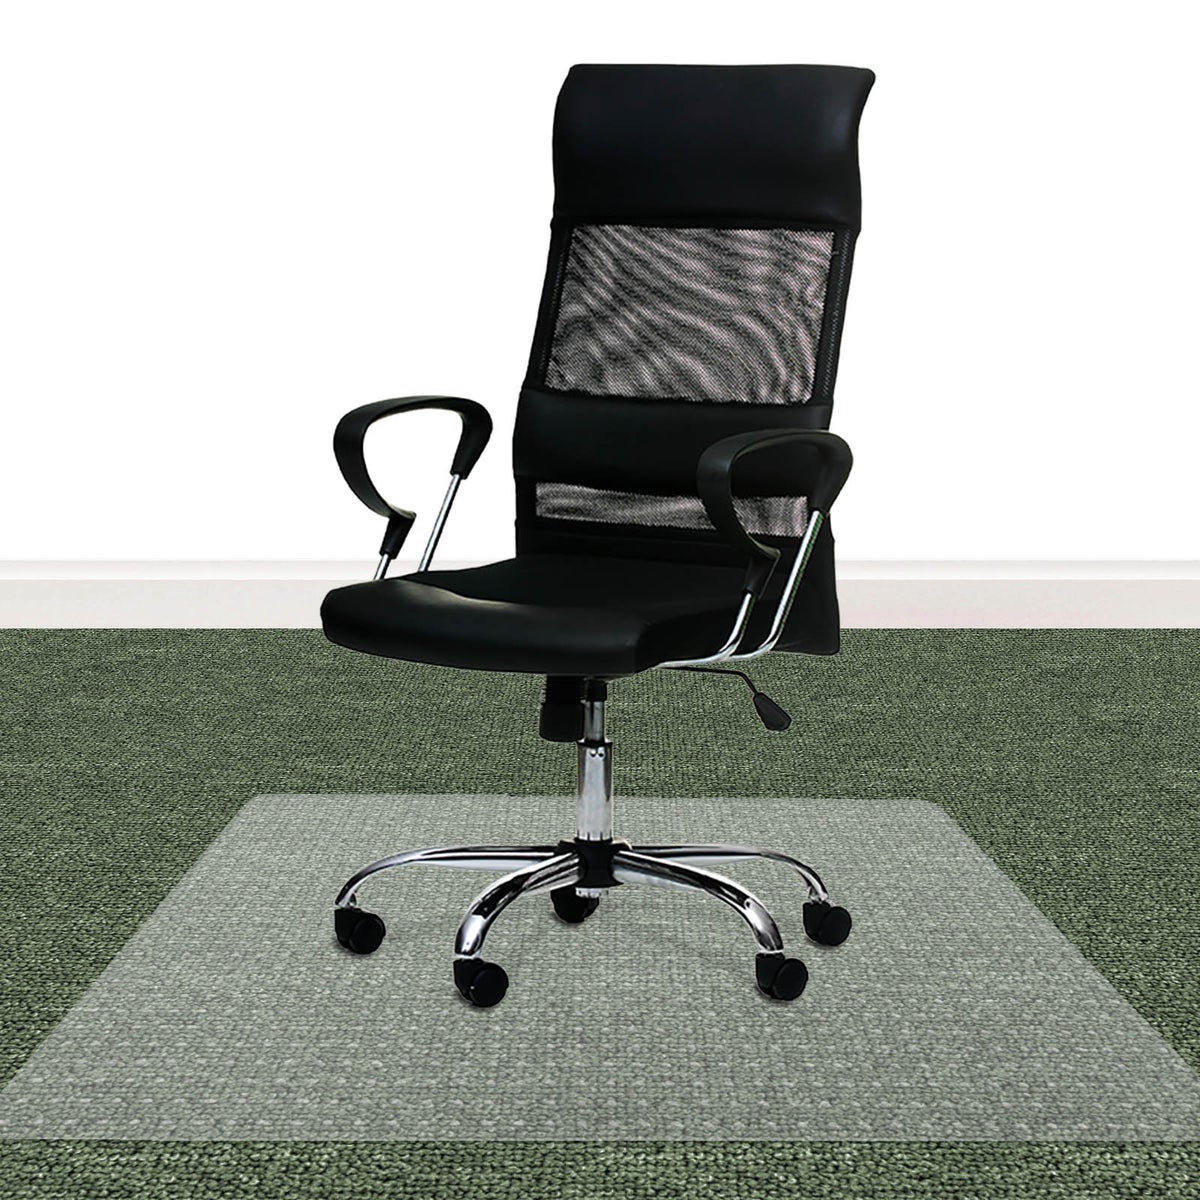 Bodenschutzmatte PET ECO-MAT - 75x120 cm - Teppichboden - Schutzmatte mit Ankernoppen auf der Unterseite als Unterlage für Bürostuhl